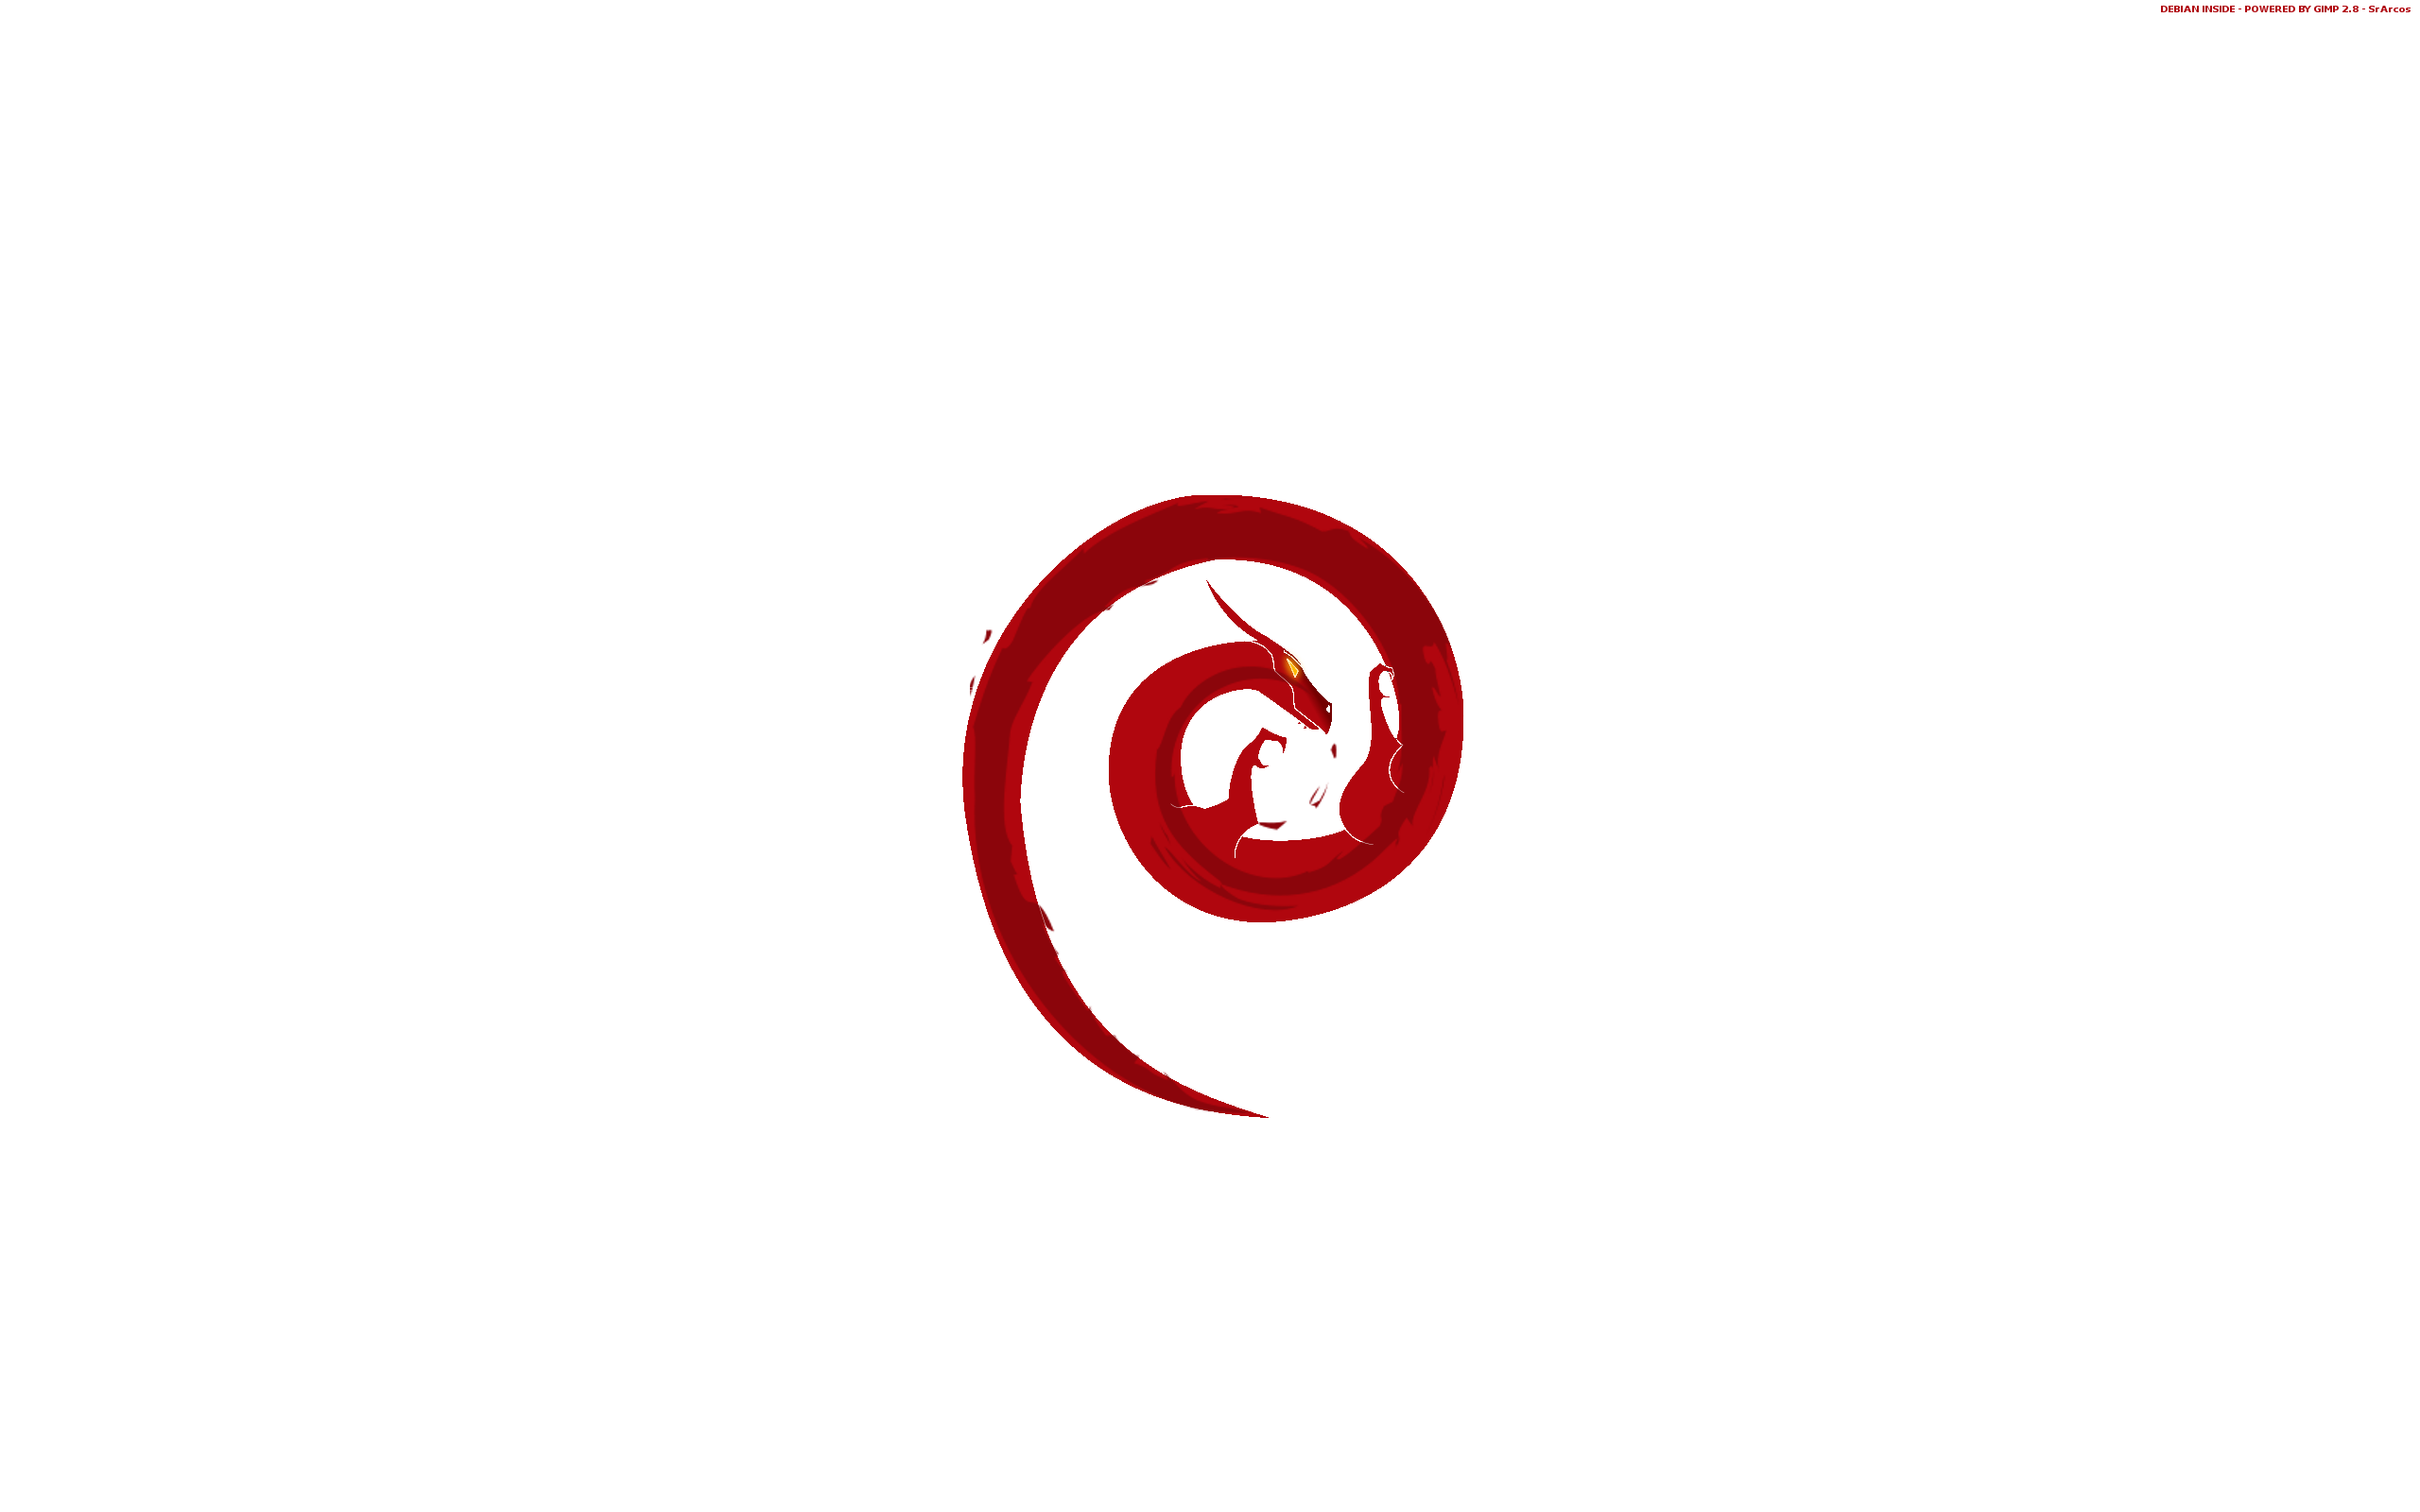 Debian Logo Transparent - wallpaper.